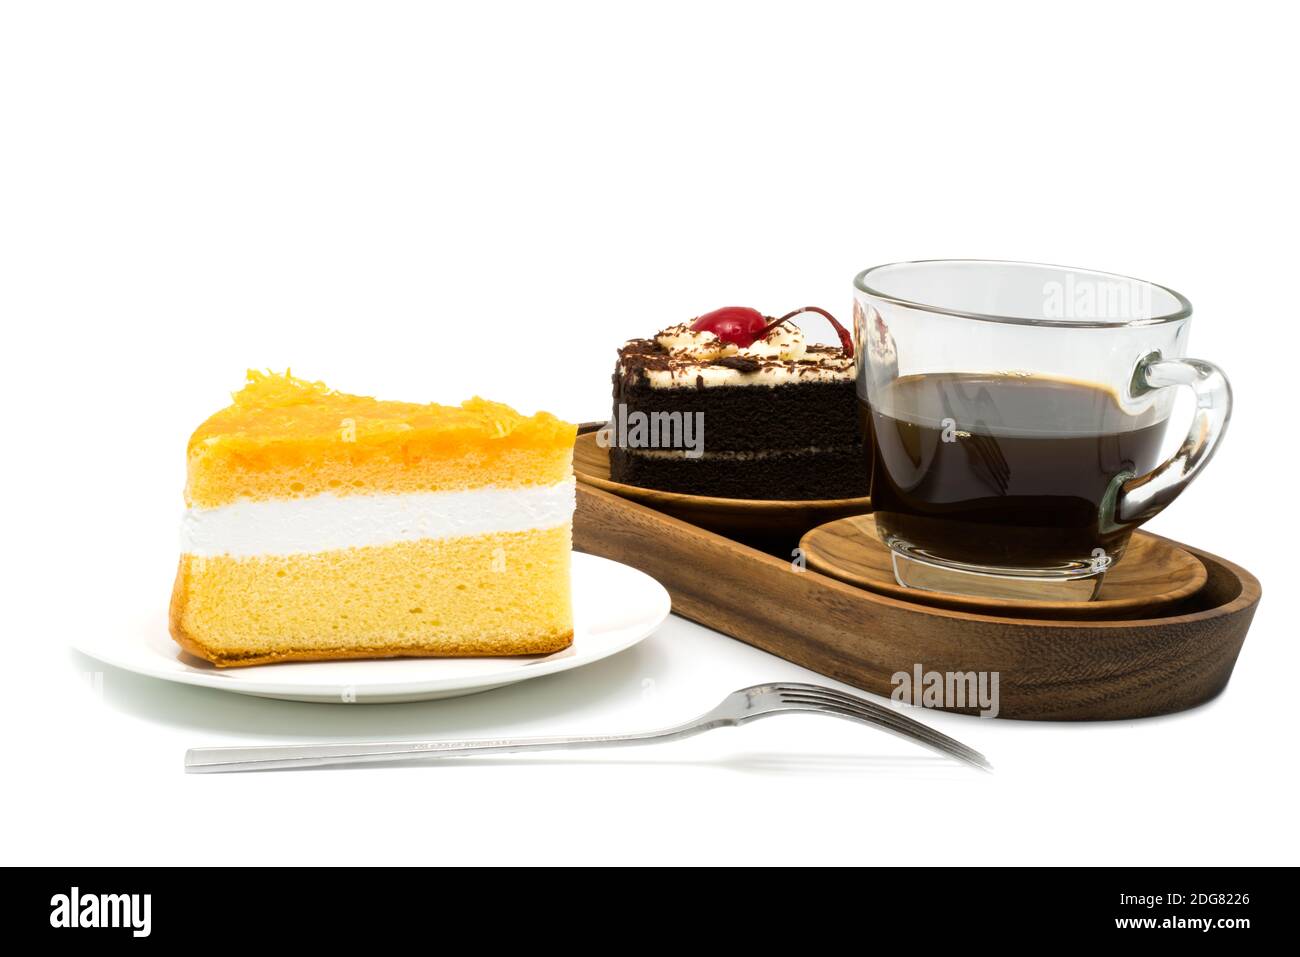 Torta di chiffon in un piatto bianco e una tazza di caffè con torta al cioccolato in un vassoio di legno Foto Stock